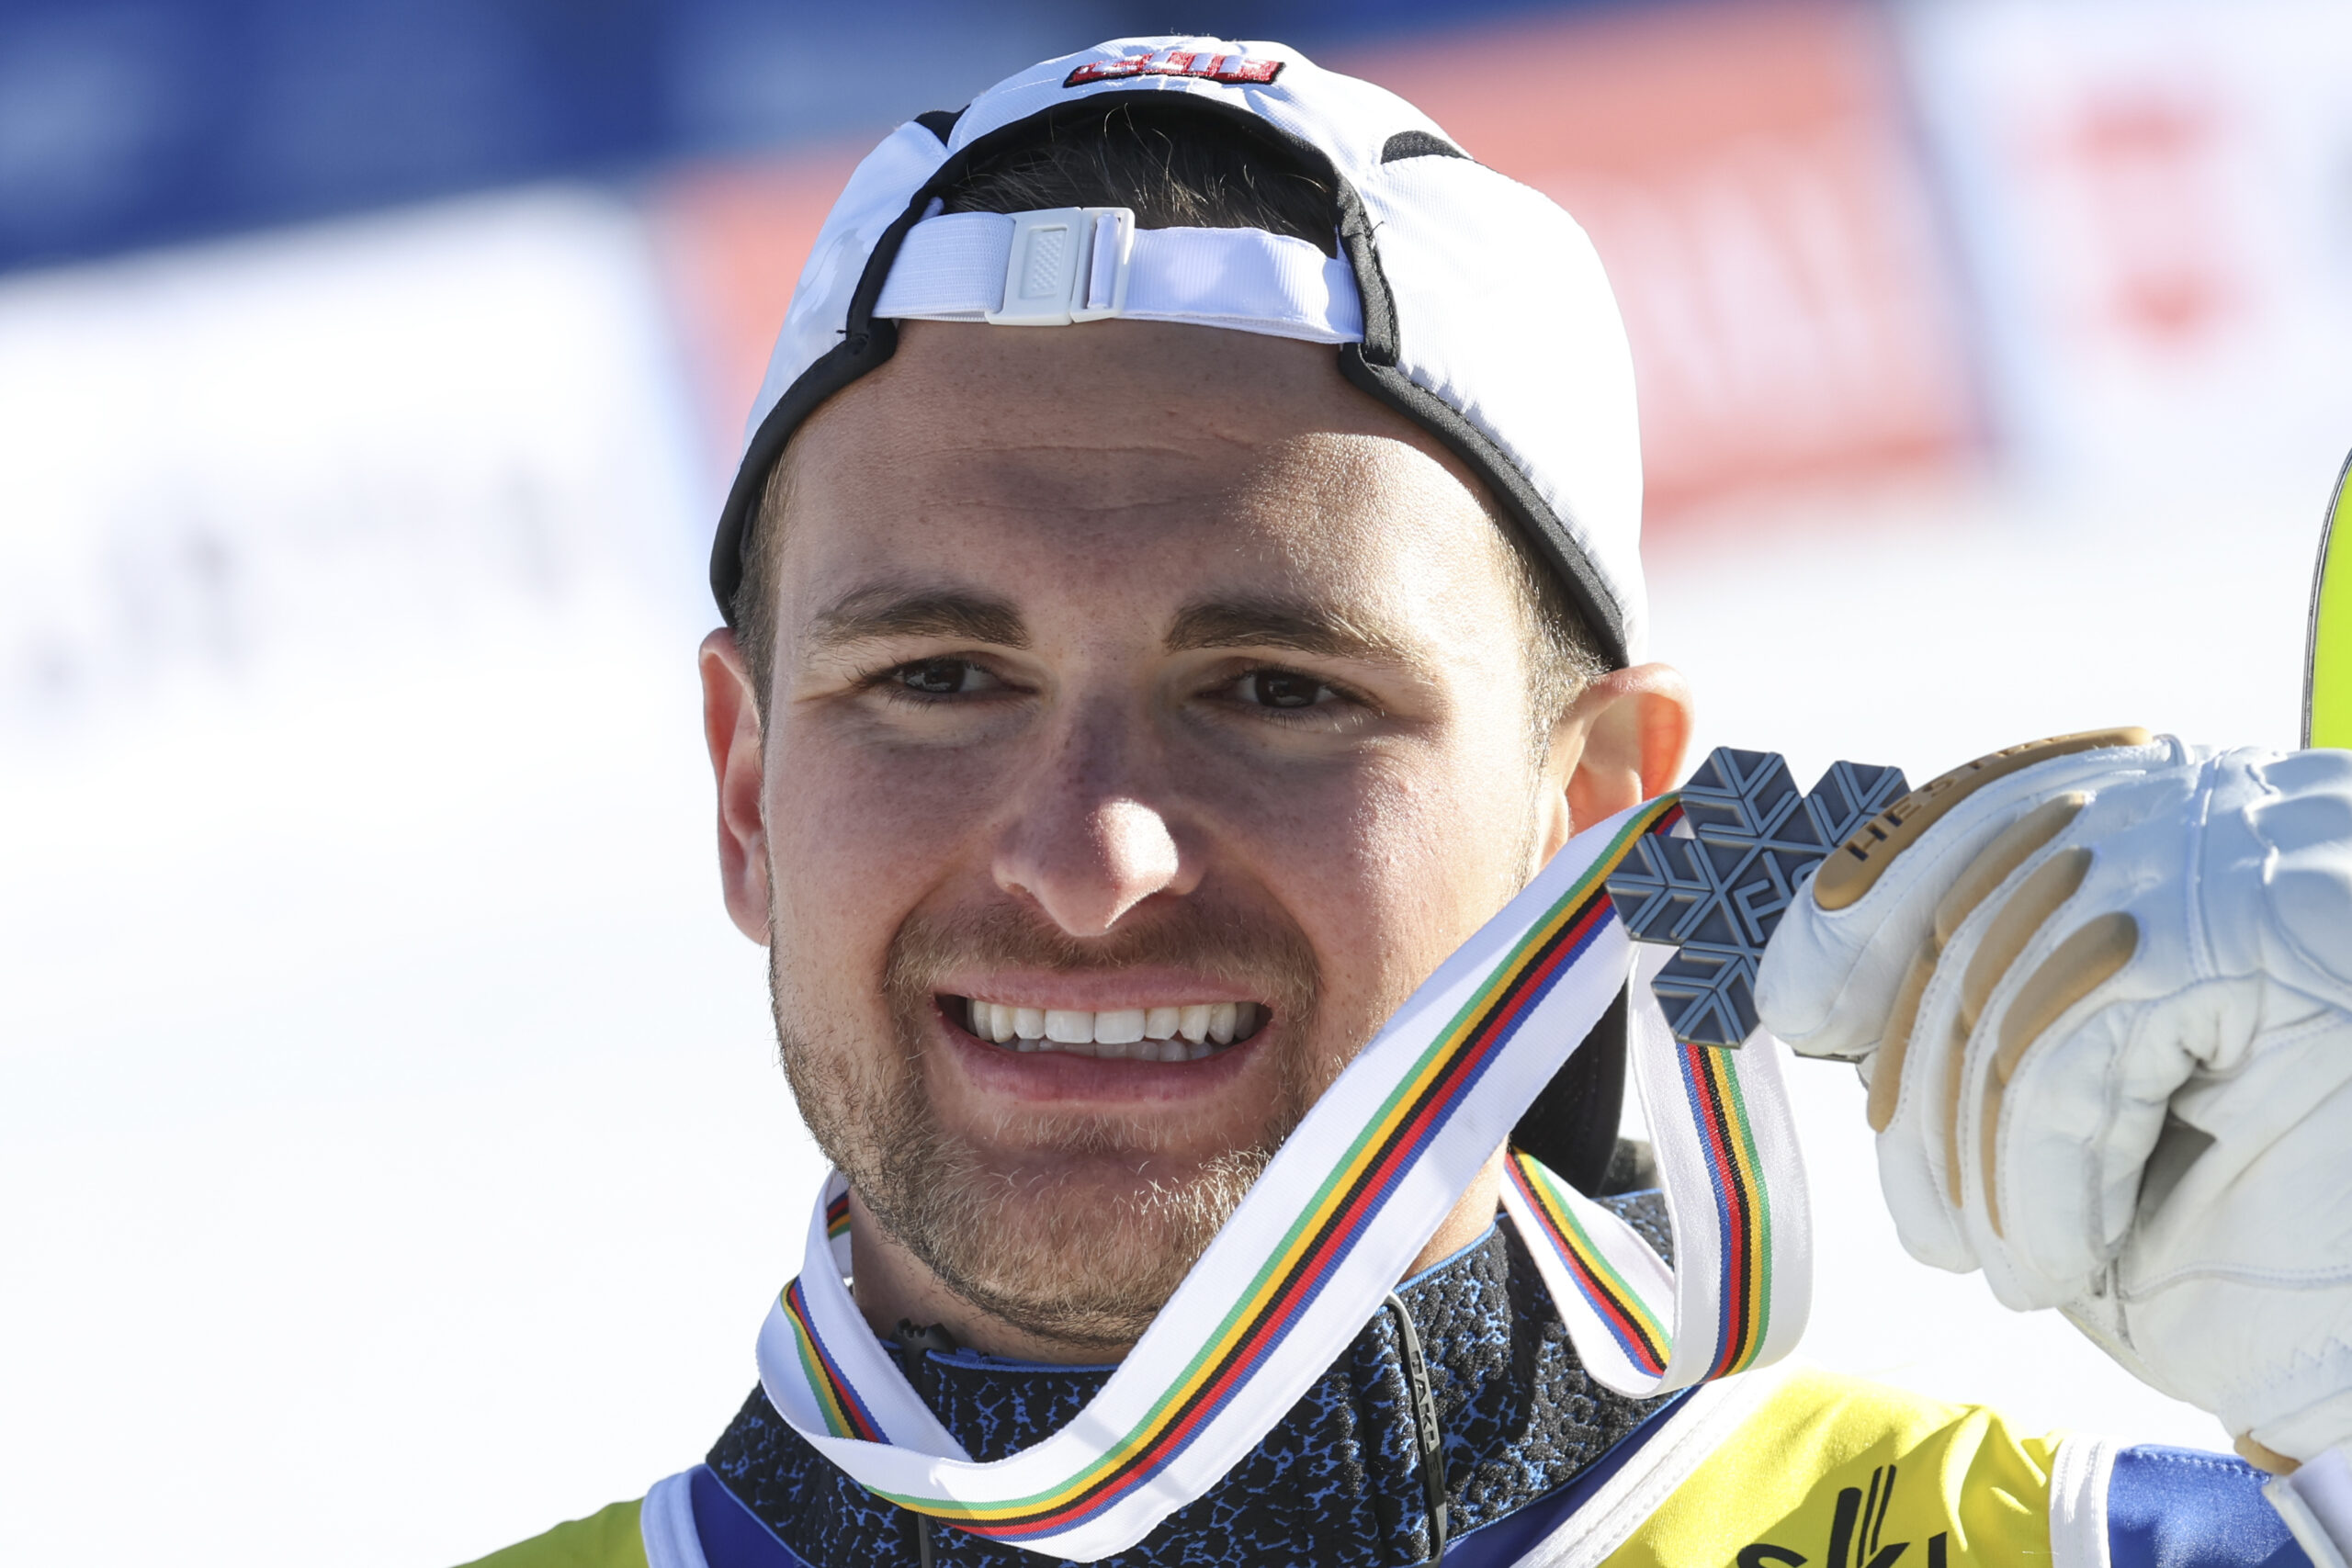 Αλέξανδρος Γκιννής στην ΕΡΤ για το ασημένιο μετάλλιο στο αλπικό σκι: Πολύ τυχερός που είχα στήριξη από την οικογένειά μου